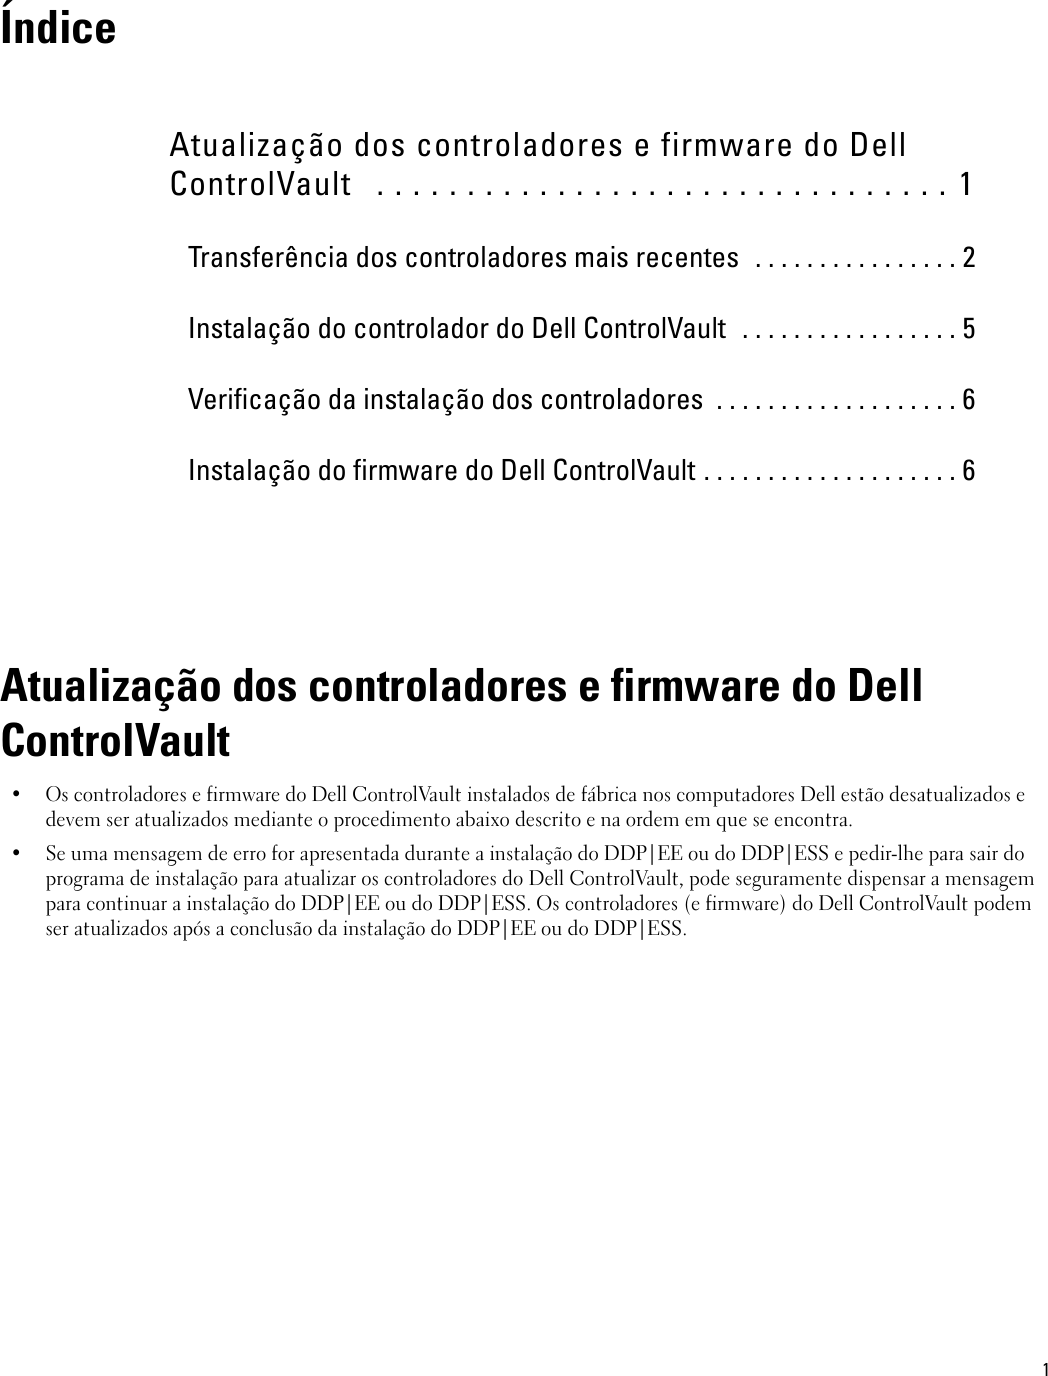 Page 1 of 8 - Dell Dell-dp-endpt-security-suite-enterprise Atualização Dos Controladores E Firmware Do ControlVault User Manual AtualizaÃ§Ã£o Control Vault User's Guide17 Pt-pt